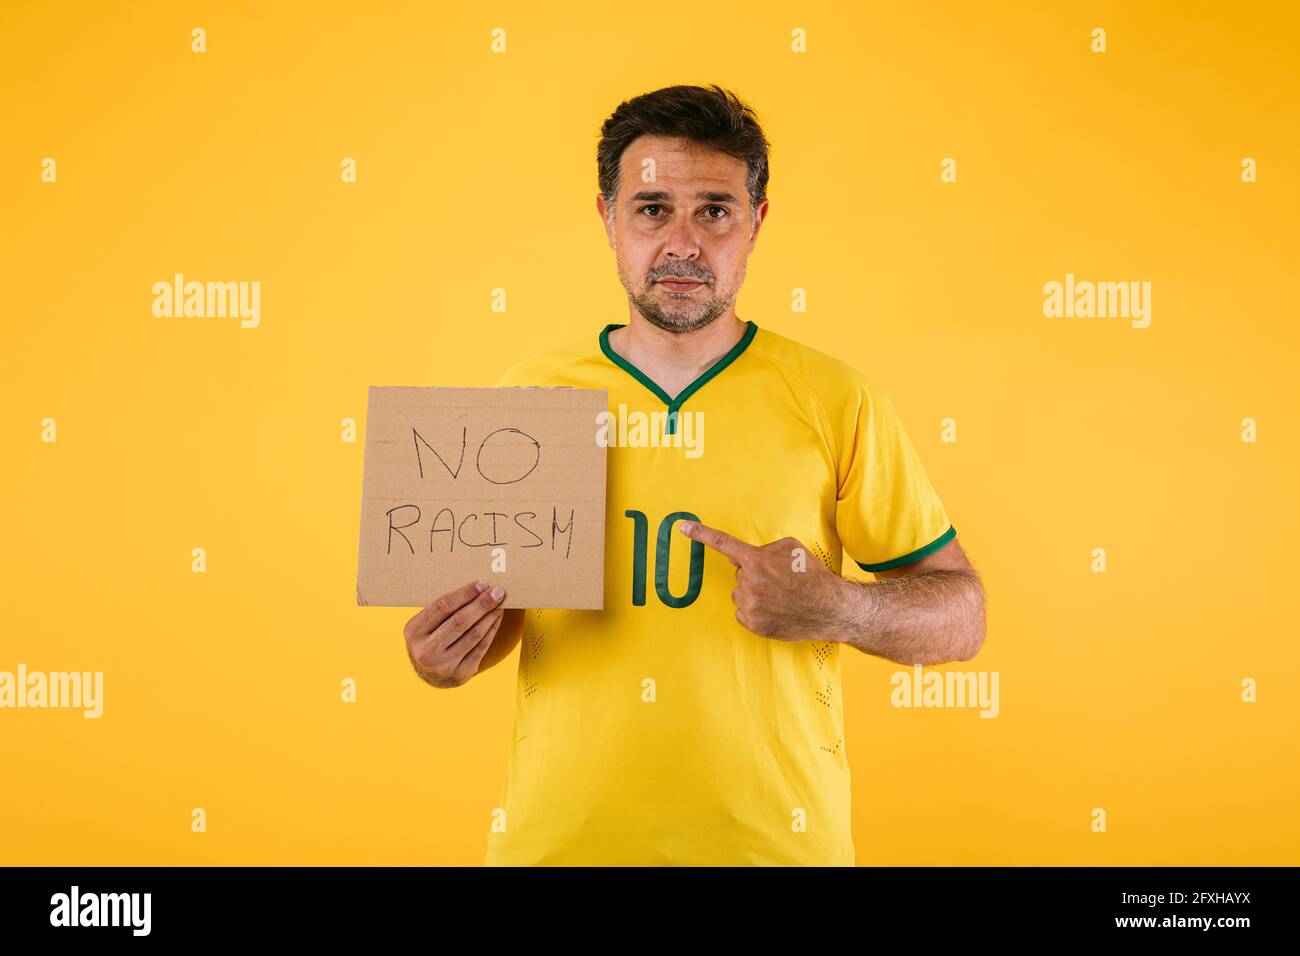 Un fan de fútbol brasileño con camiseta amarilla y un signo de eso Dice 'No racismo' Foto de stock